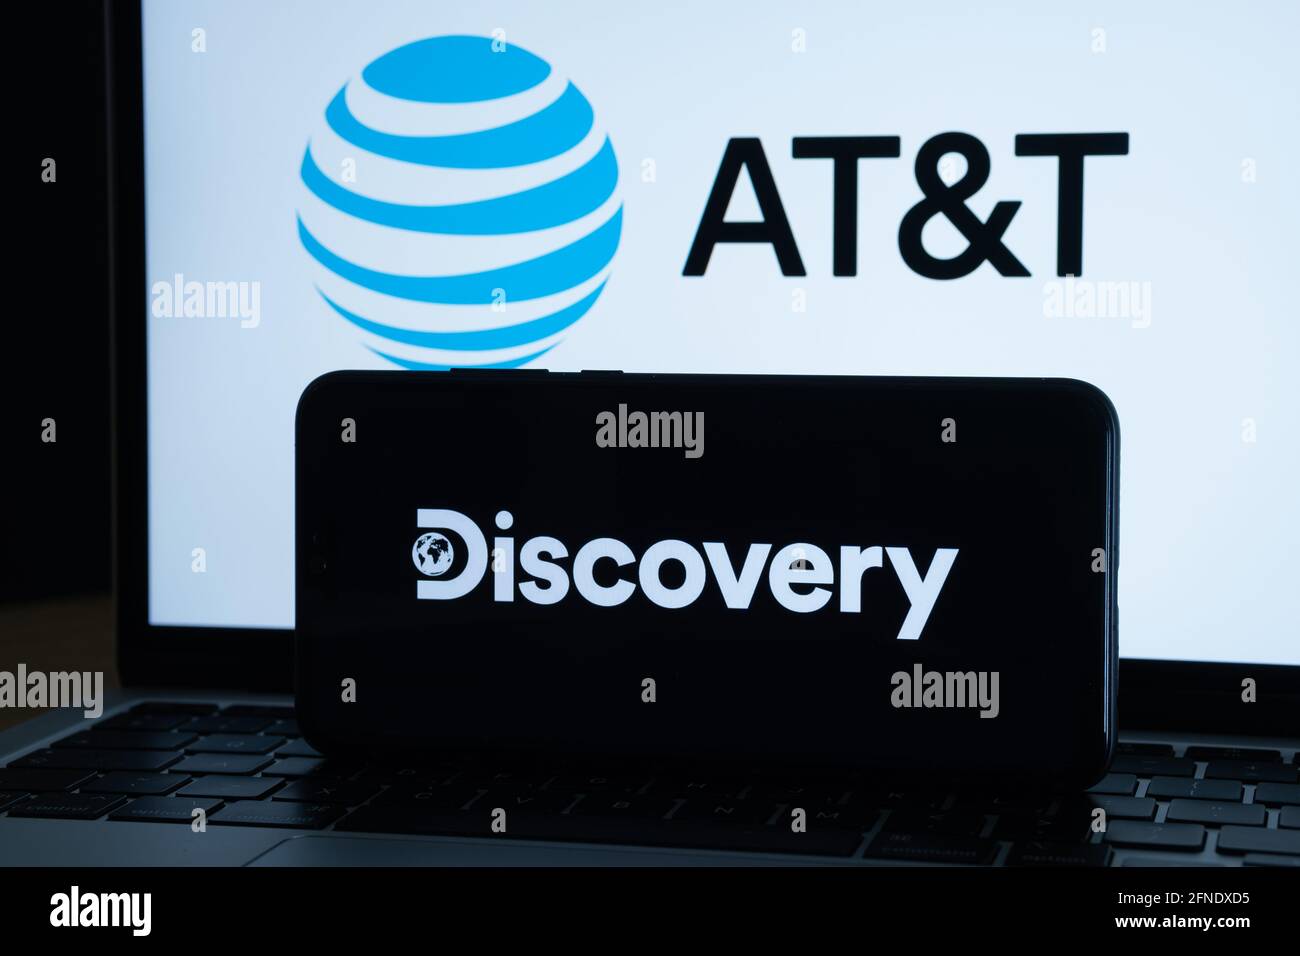 Discovery- und AT&T-Fusionskonzept. Discovery-Logo auf dunklem Smartphone und AT&T-Logo auf dem unscharfen Laptop-Bildschirm auf der Rückseite. Stafffor, United King Stockfoto